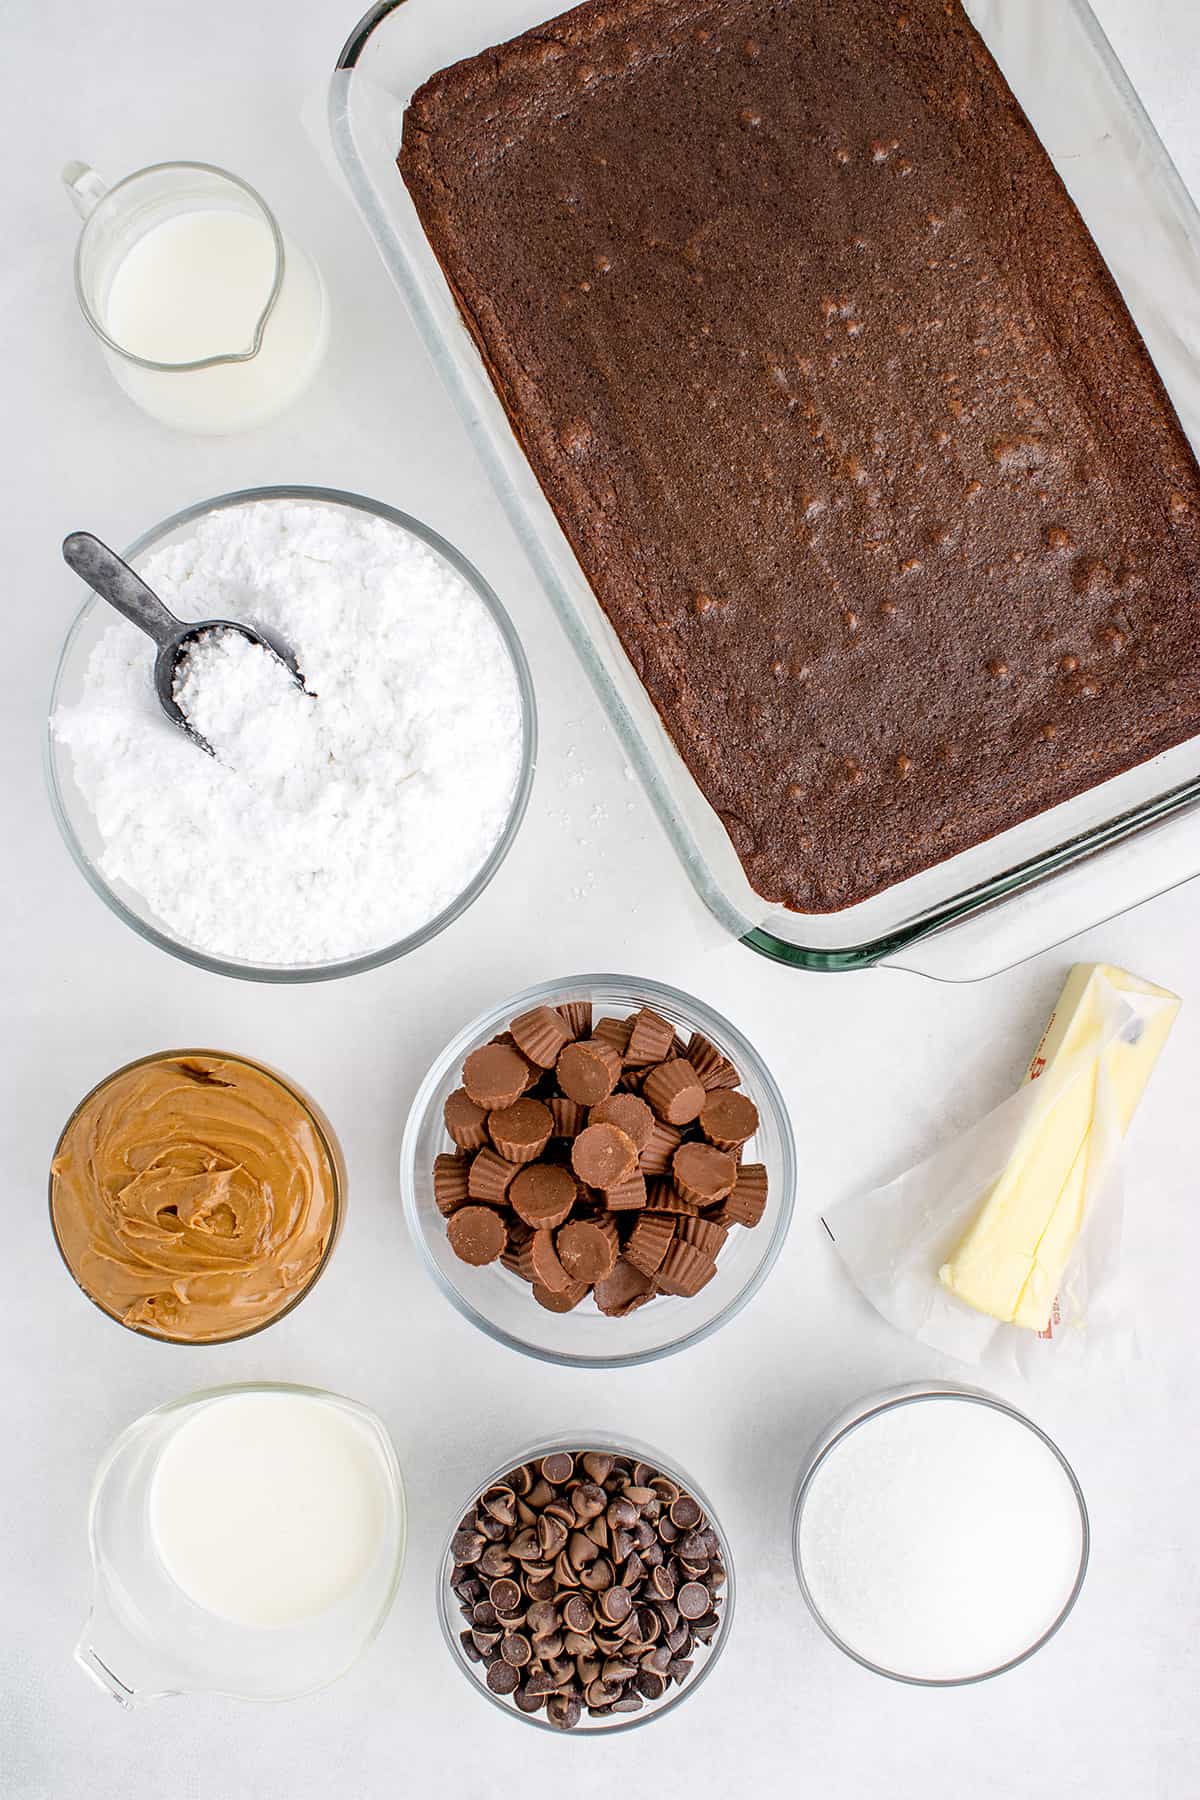 Ingredients for Reese's brownies.